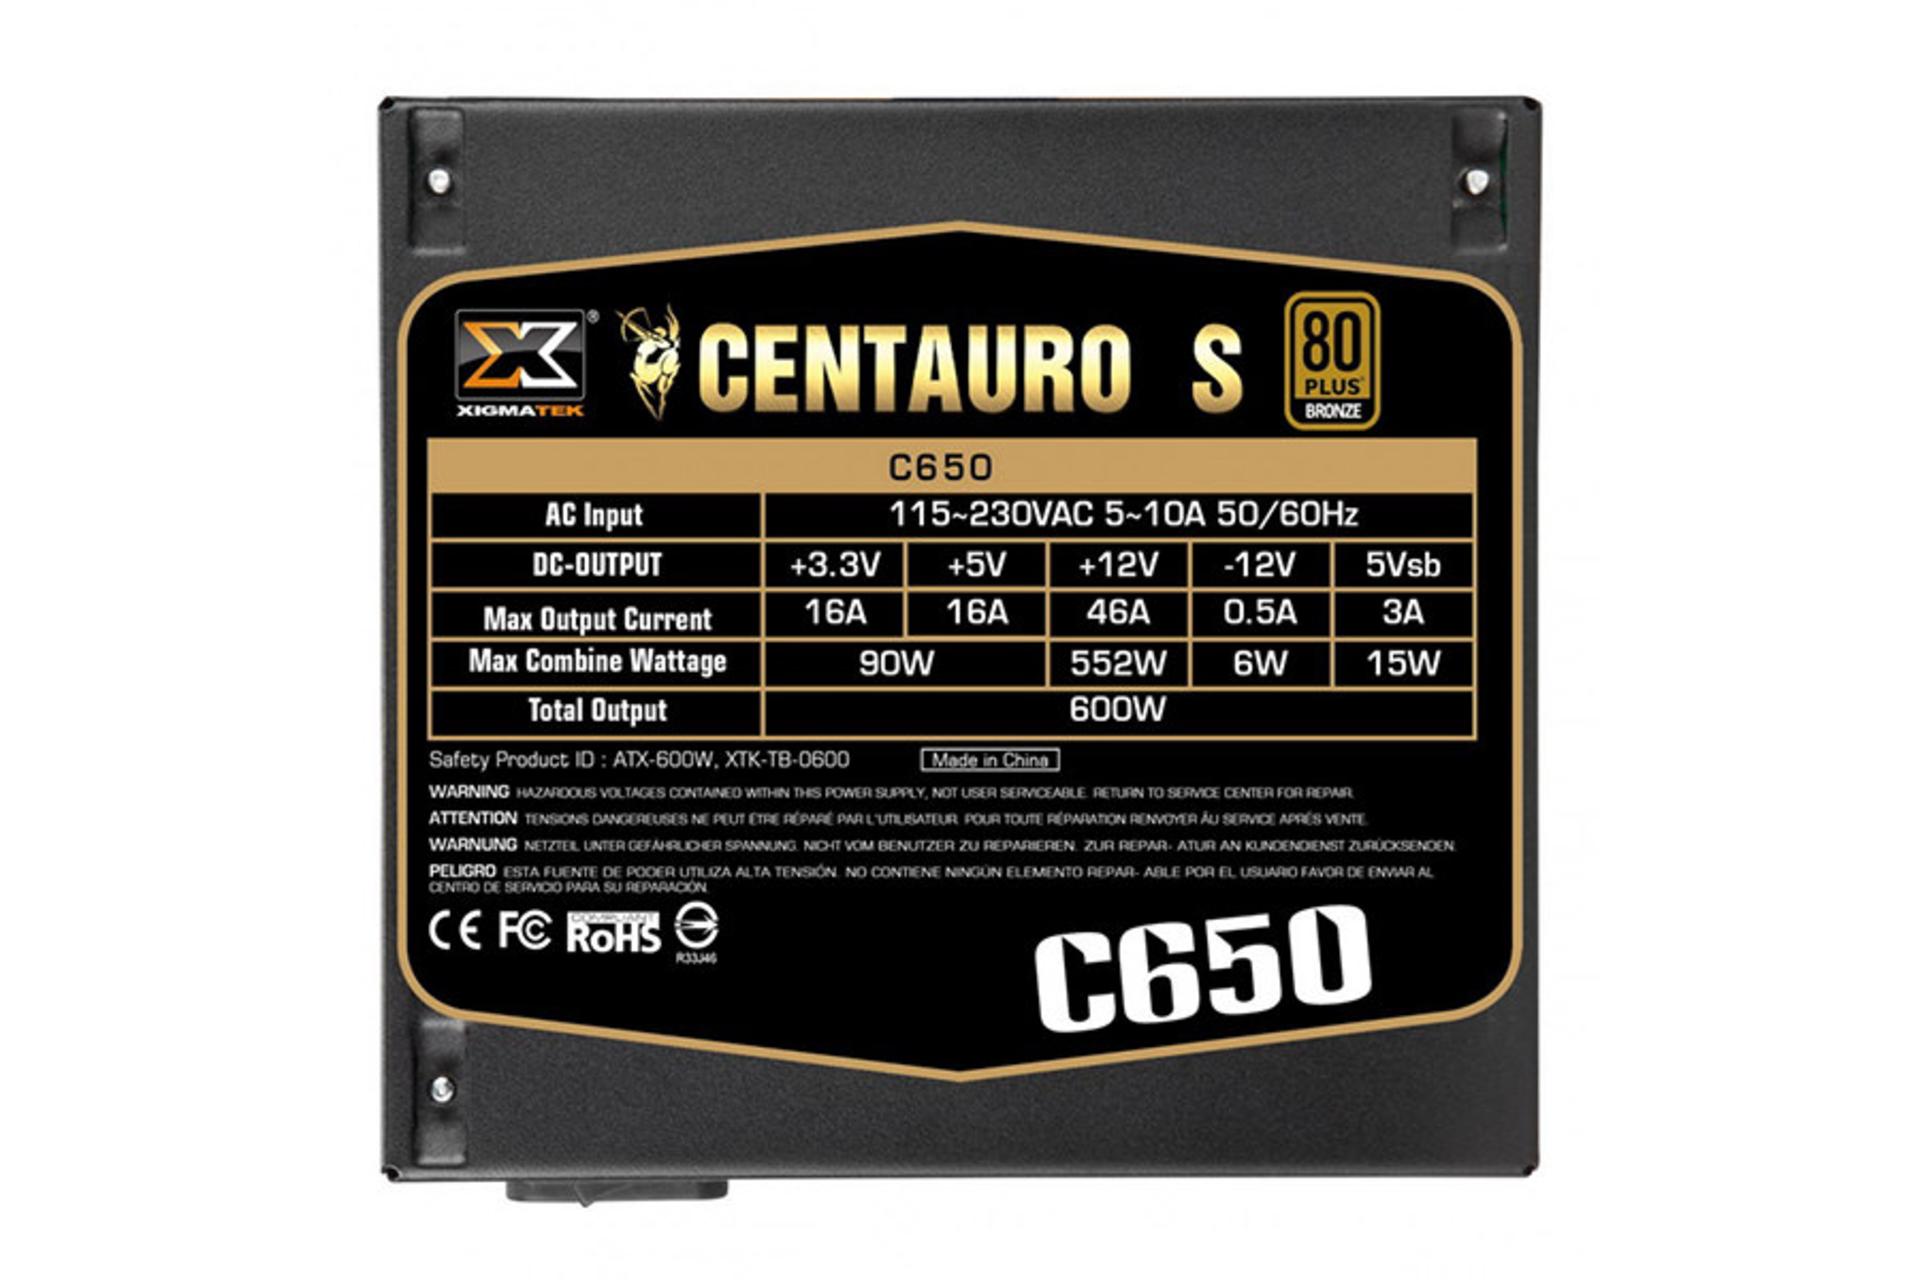 پاور کامپیوتر زیگماتک Centauro S C650 با توان 600 وات مشخصات